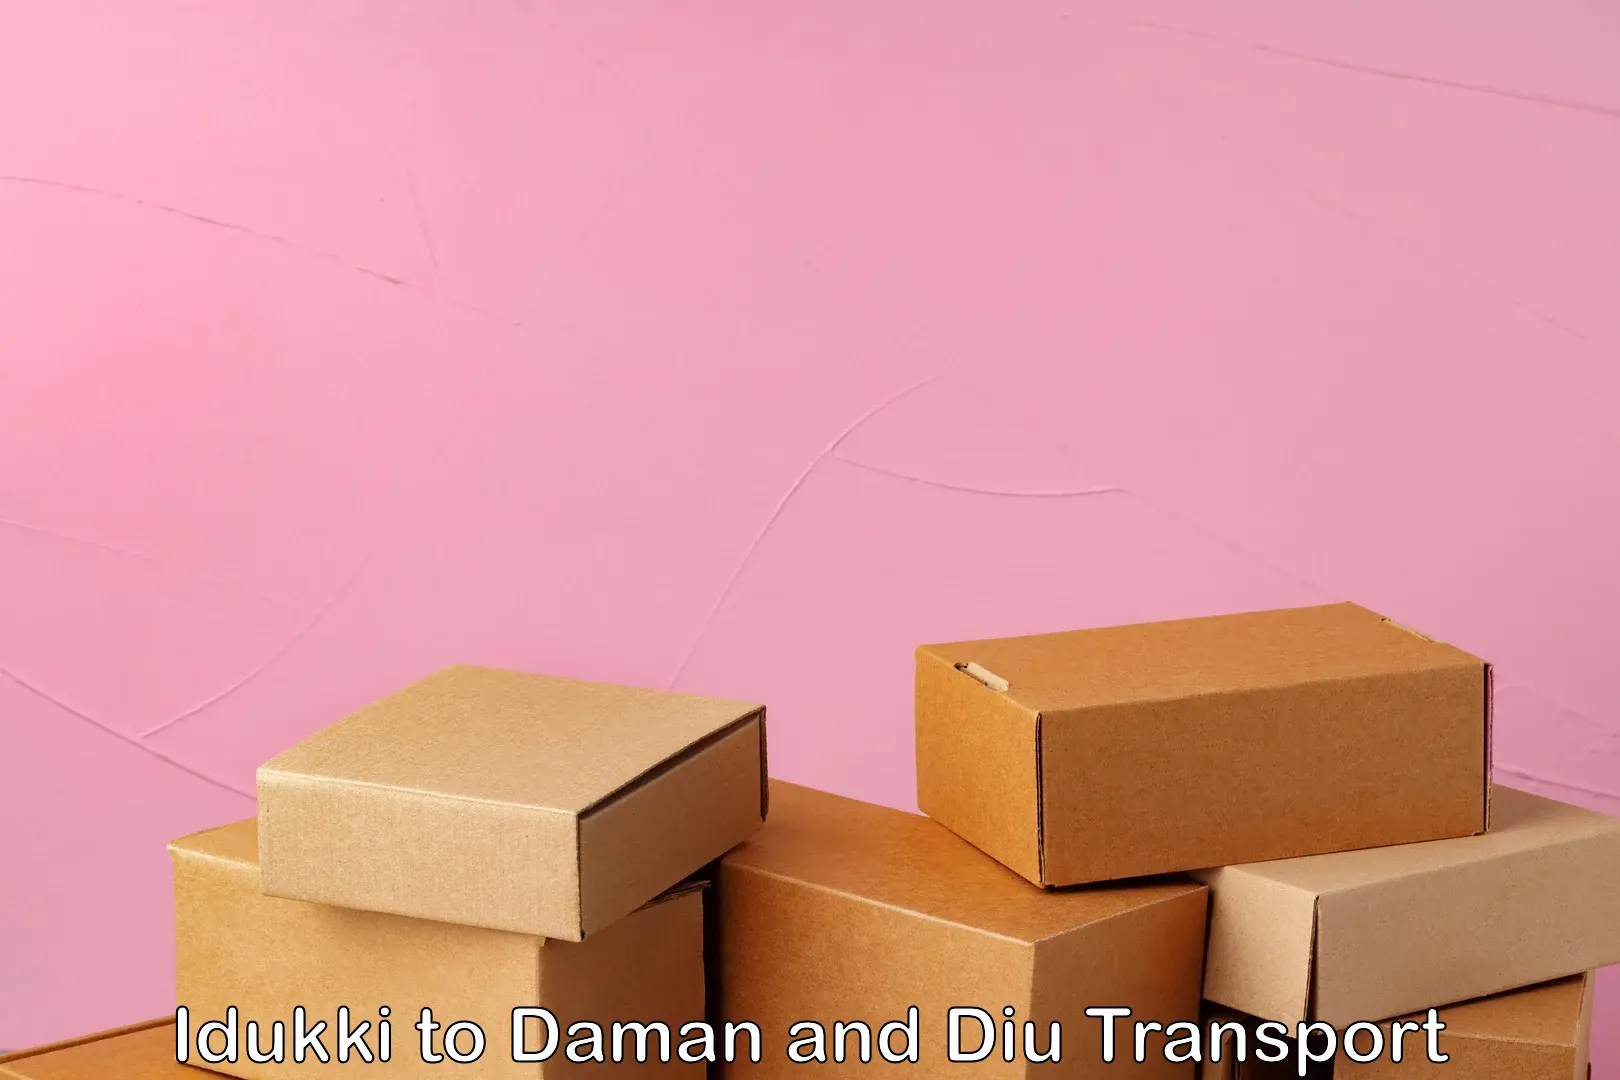 Nearest transport service Idukki to Daman and Diu